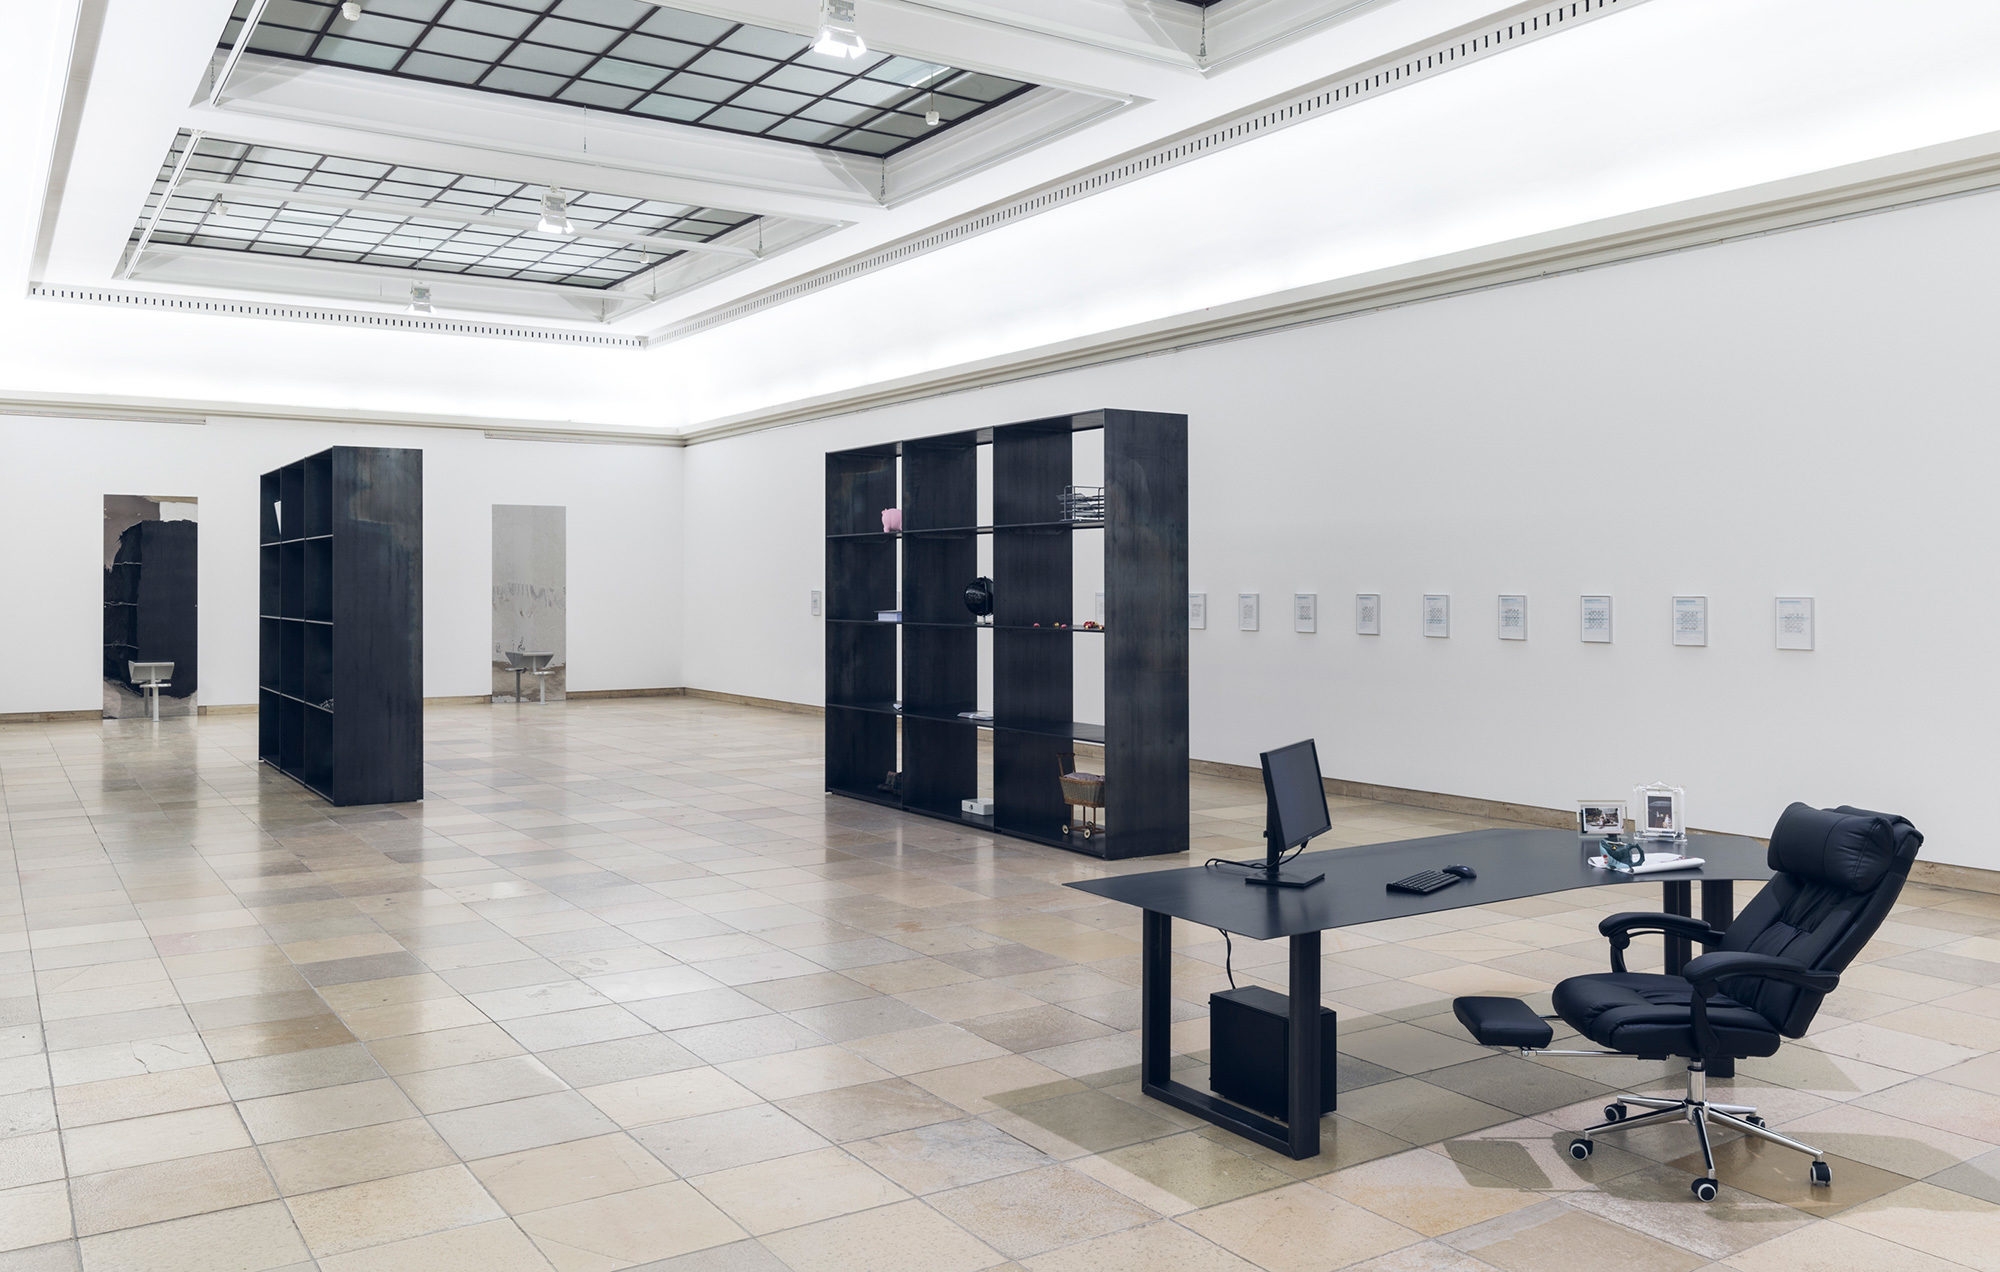 Installation view, Sung Tieu, Zugzwang, Haus der Kunst, Munich, 31 January – 30 August 2020